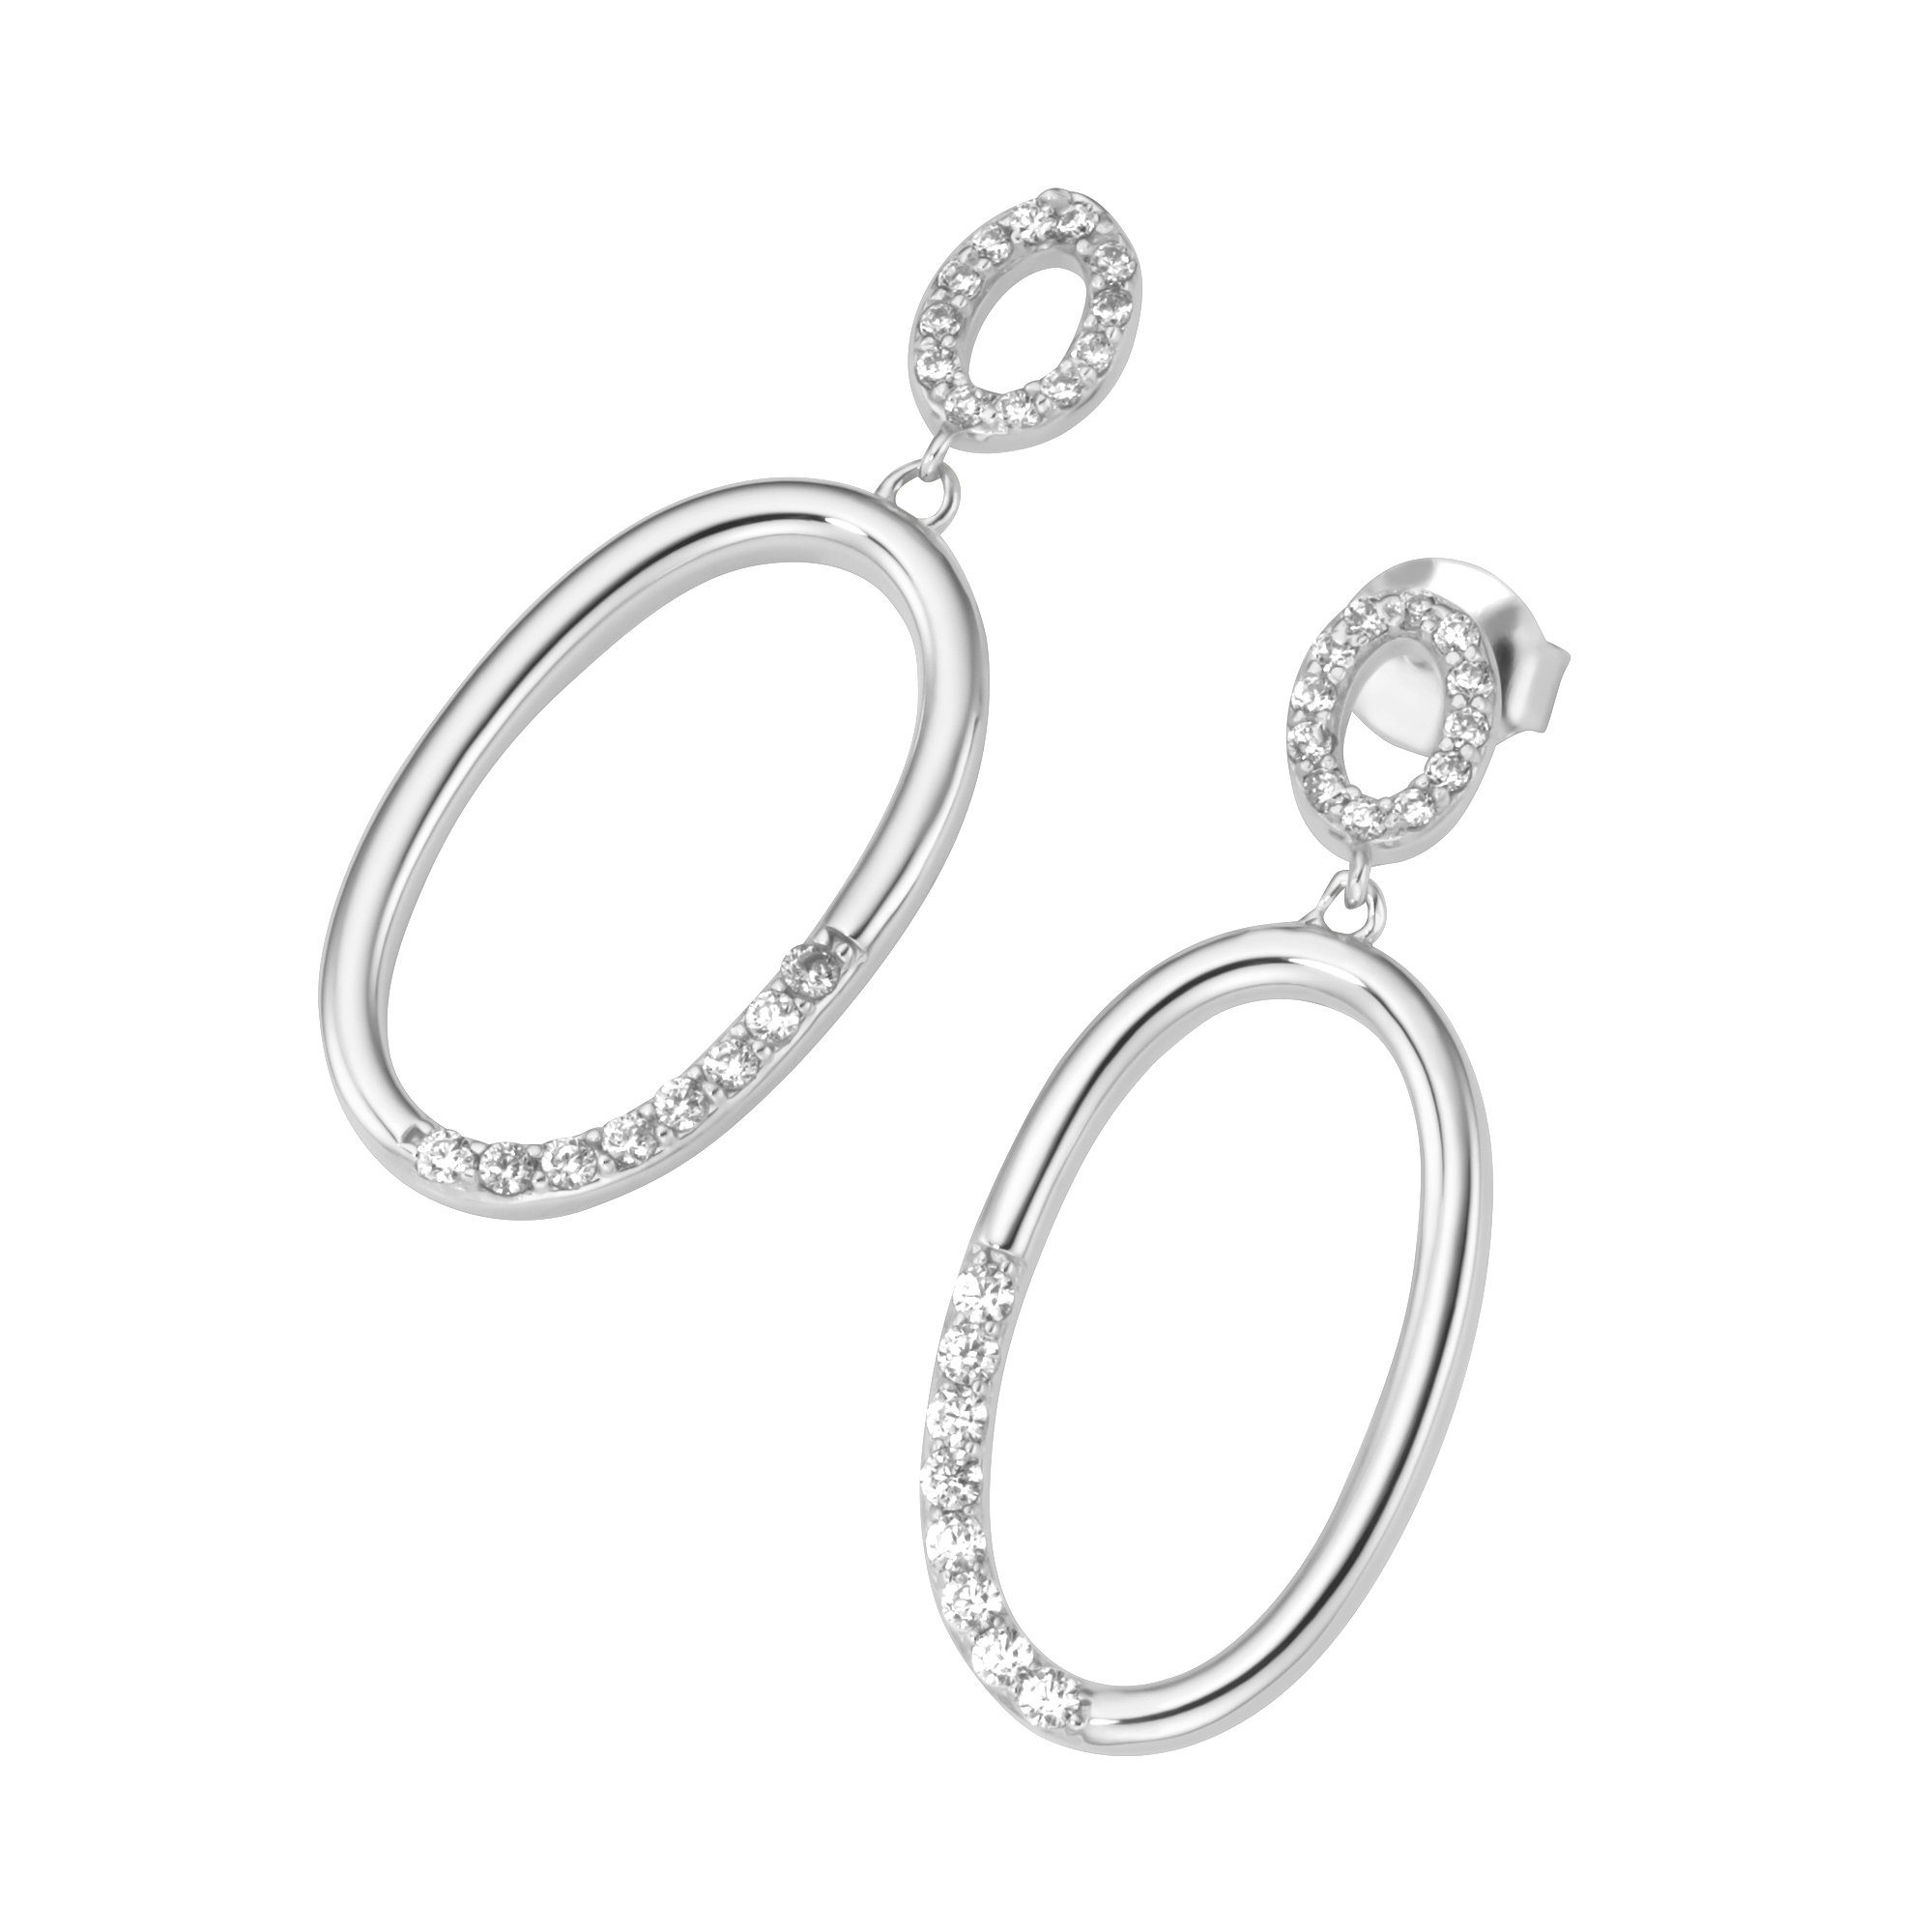 Smart Jewel Paar Ohrhänger mit Behang, beweglich,mit weißen Zirkonia, Silber  925, Ca. 40 weiße Zirkonia, 24 x ø 1,1 mm, 16 x ø 1,4 mm | Ohrhänger